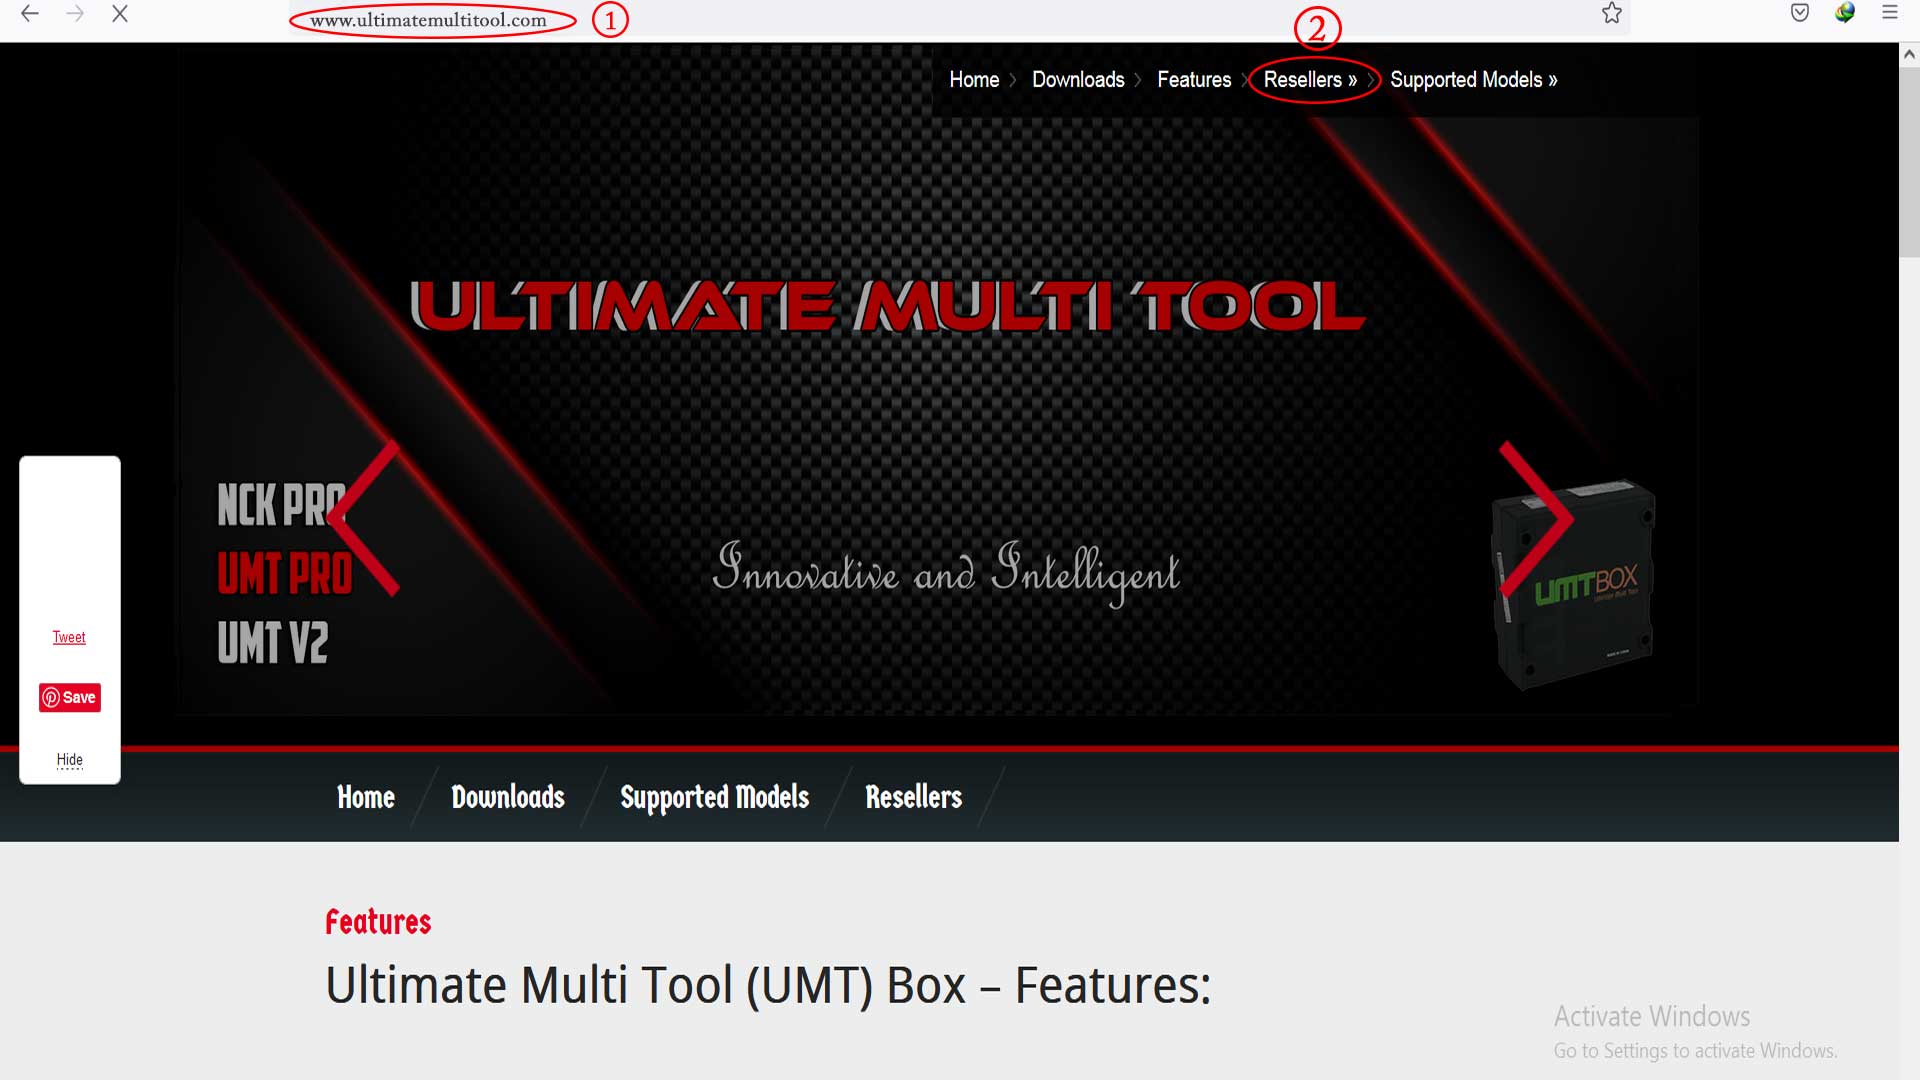 www.ultimatemultitool.com